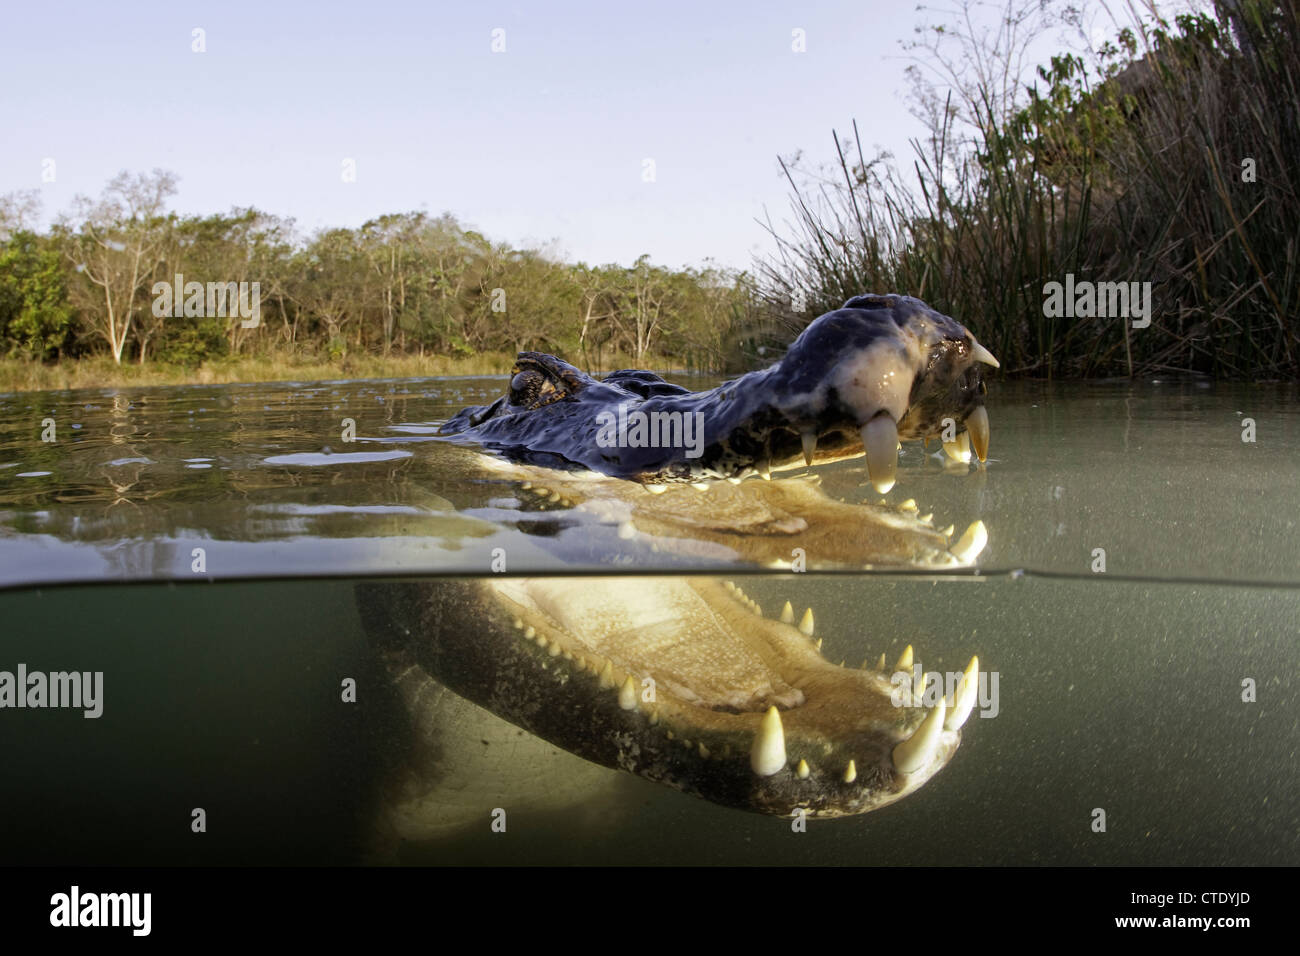 Spectacled Caiman, Caiman crocodilus, Rio Baia Bonita, Bonito, Mato Grosso do Sul, Brazil Stock Photo